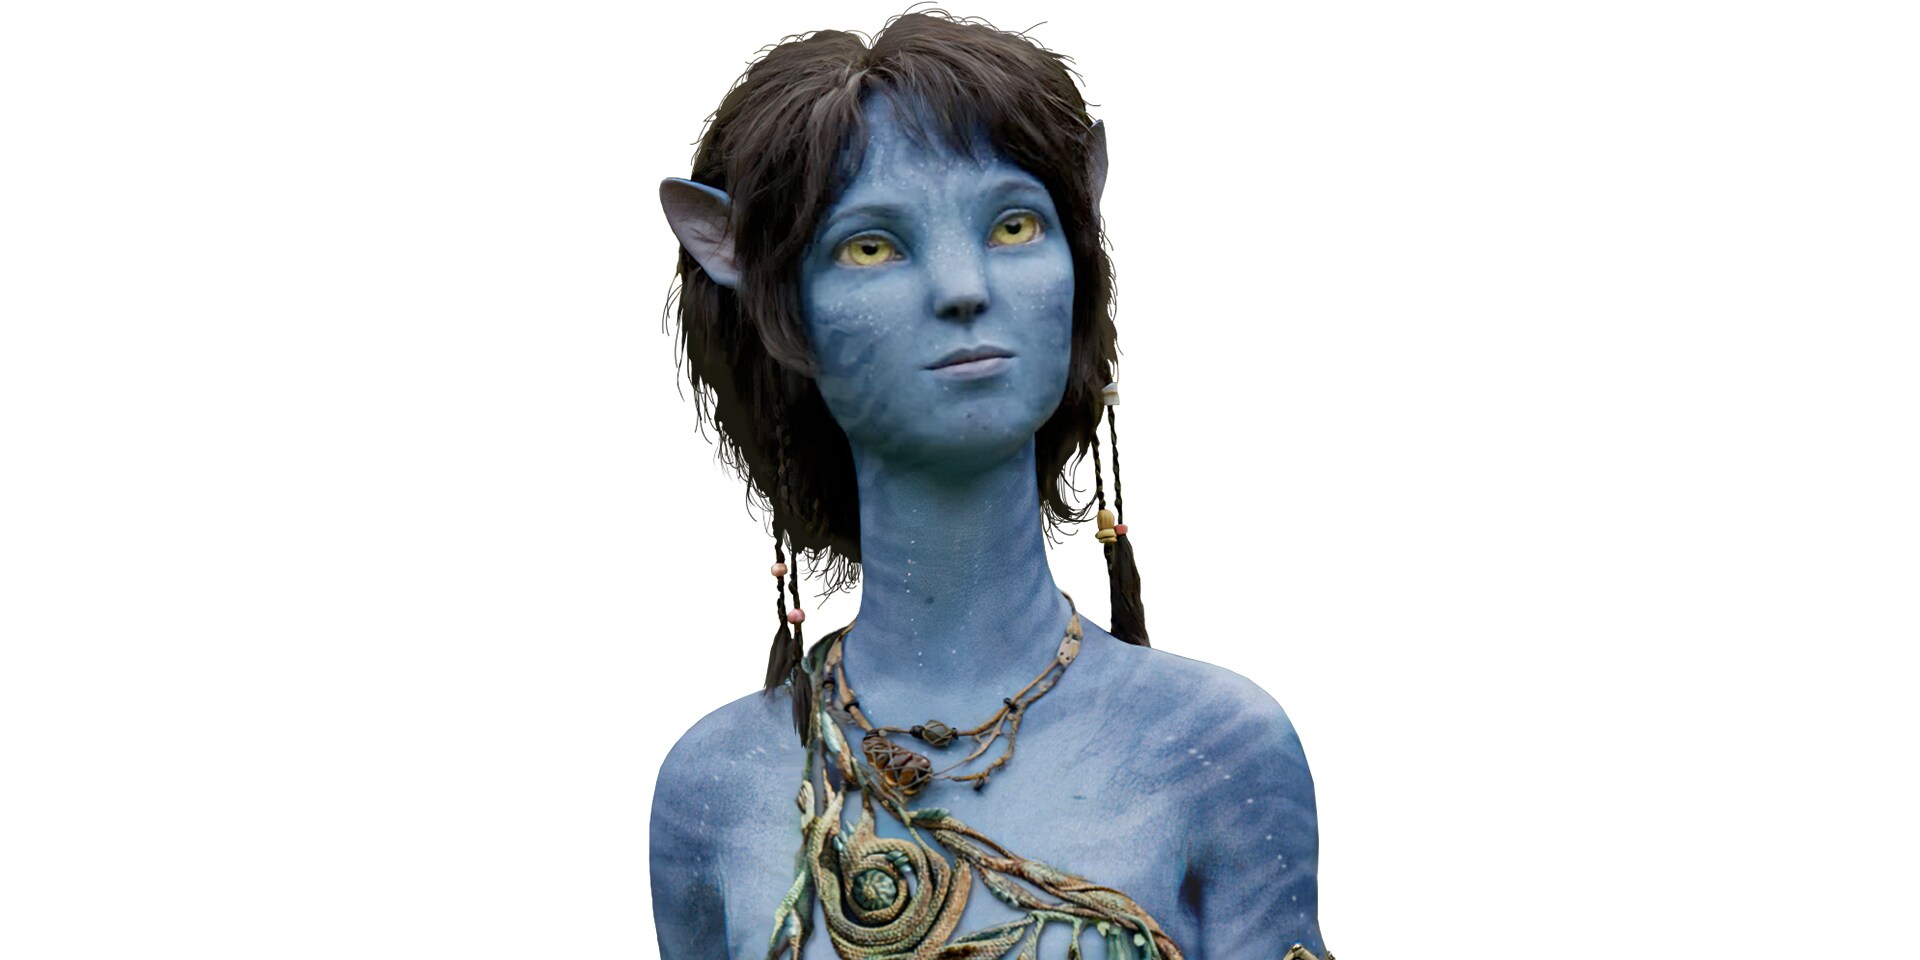 Kiri | Avatar.com: Hãy khám phá thế giới tuyệt đẹp và đầy màu sắc của Kiri Avatar 2024 trên Avatar.com! Tận hưởng chuyến hành trình phiêu lưu đầy thú vị và bí ẩn cùng những người bạn mới chỉ có trên Kiri Avatar.